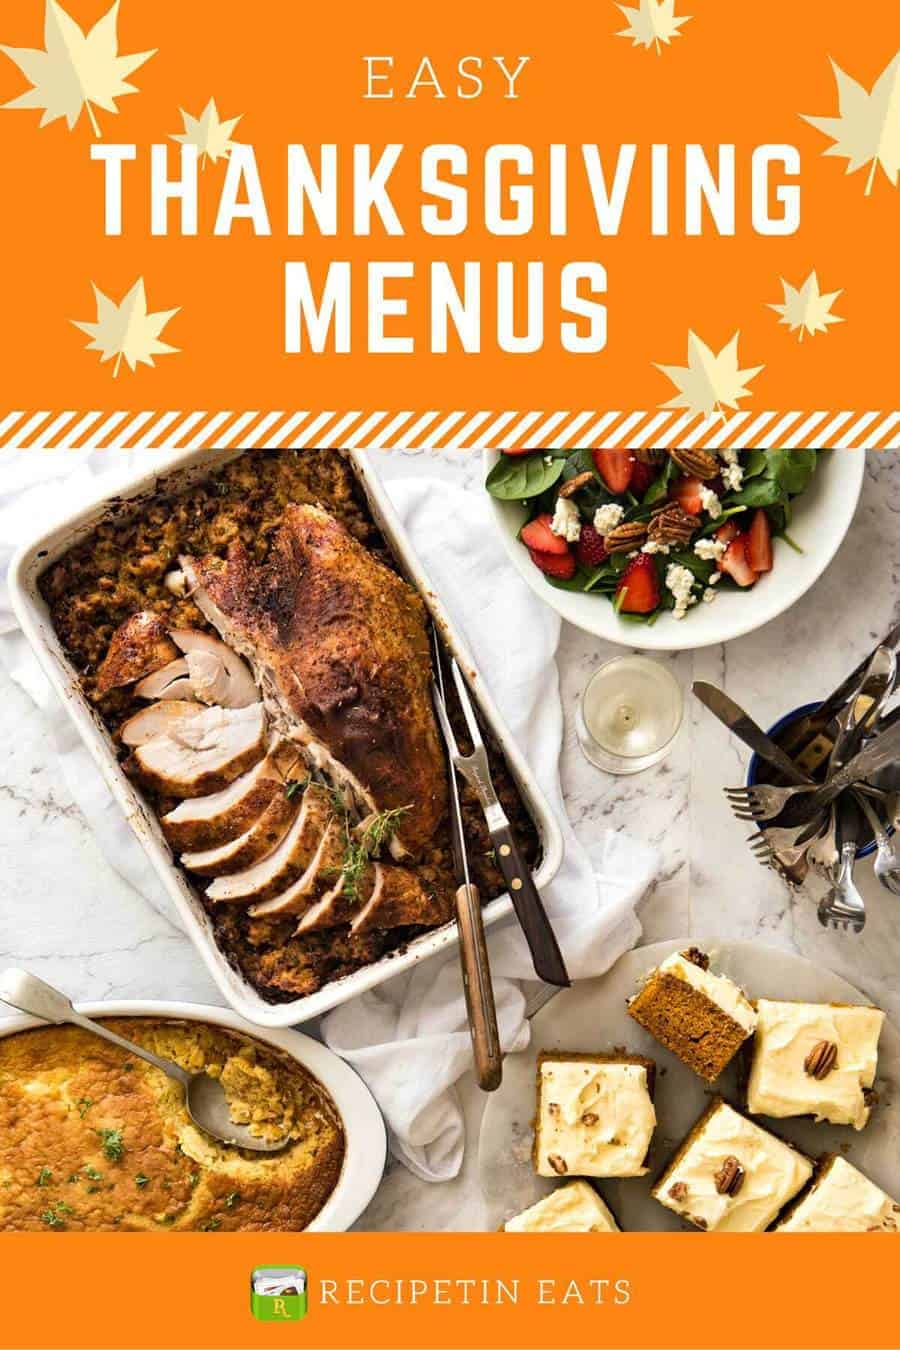 Easy Thanksgiving Menus www.recipetineats.com